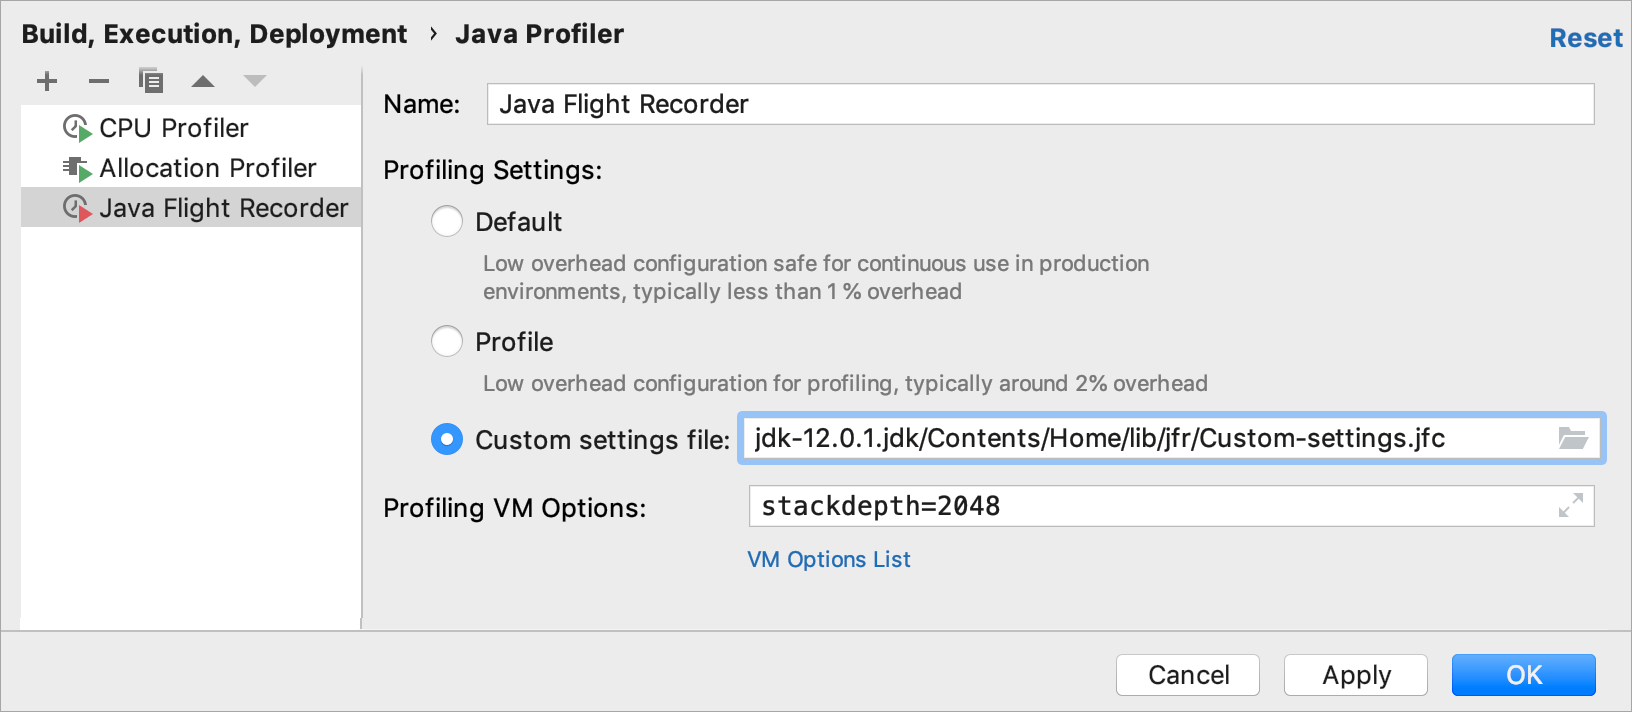 Uploading custom settings to JFR